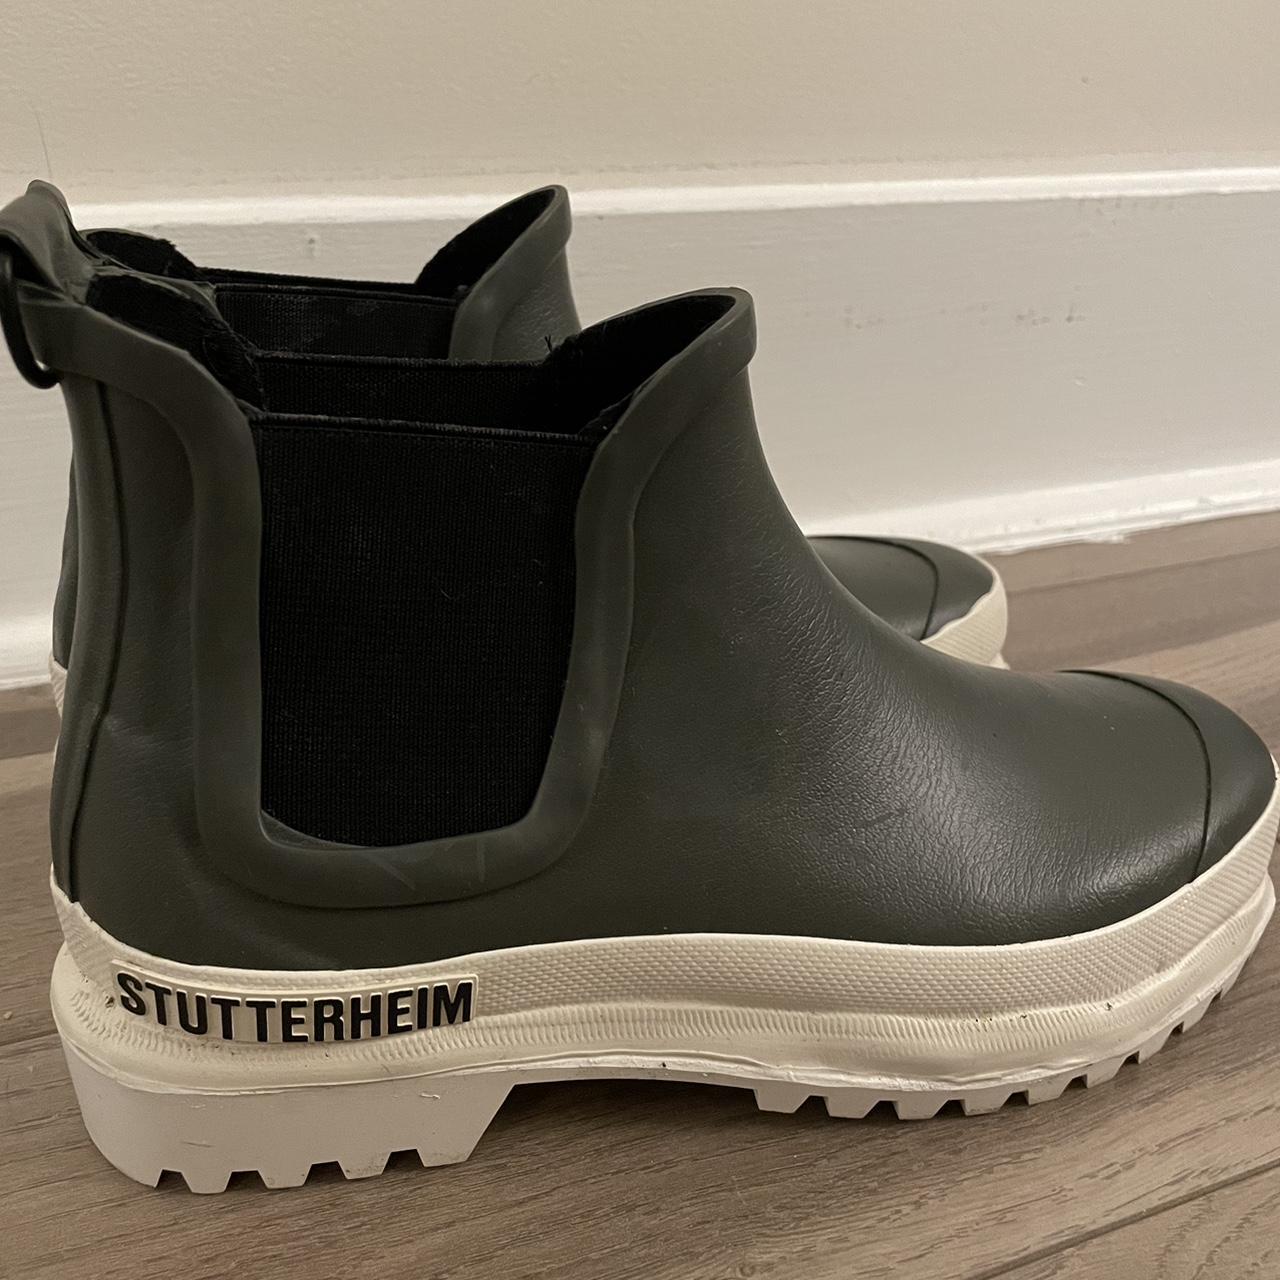 Stutterheim Women's White and Green Boots